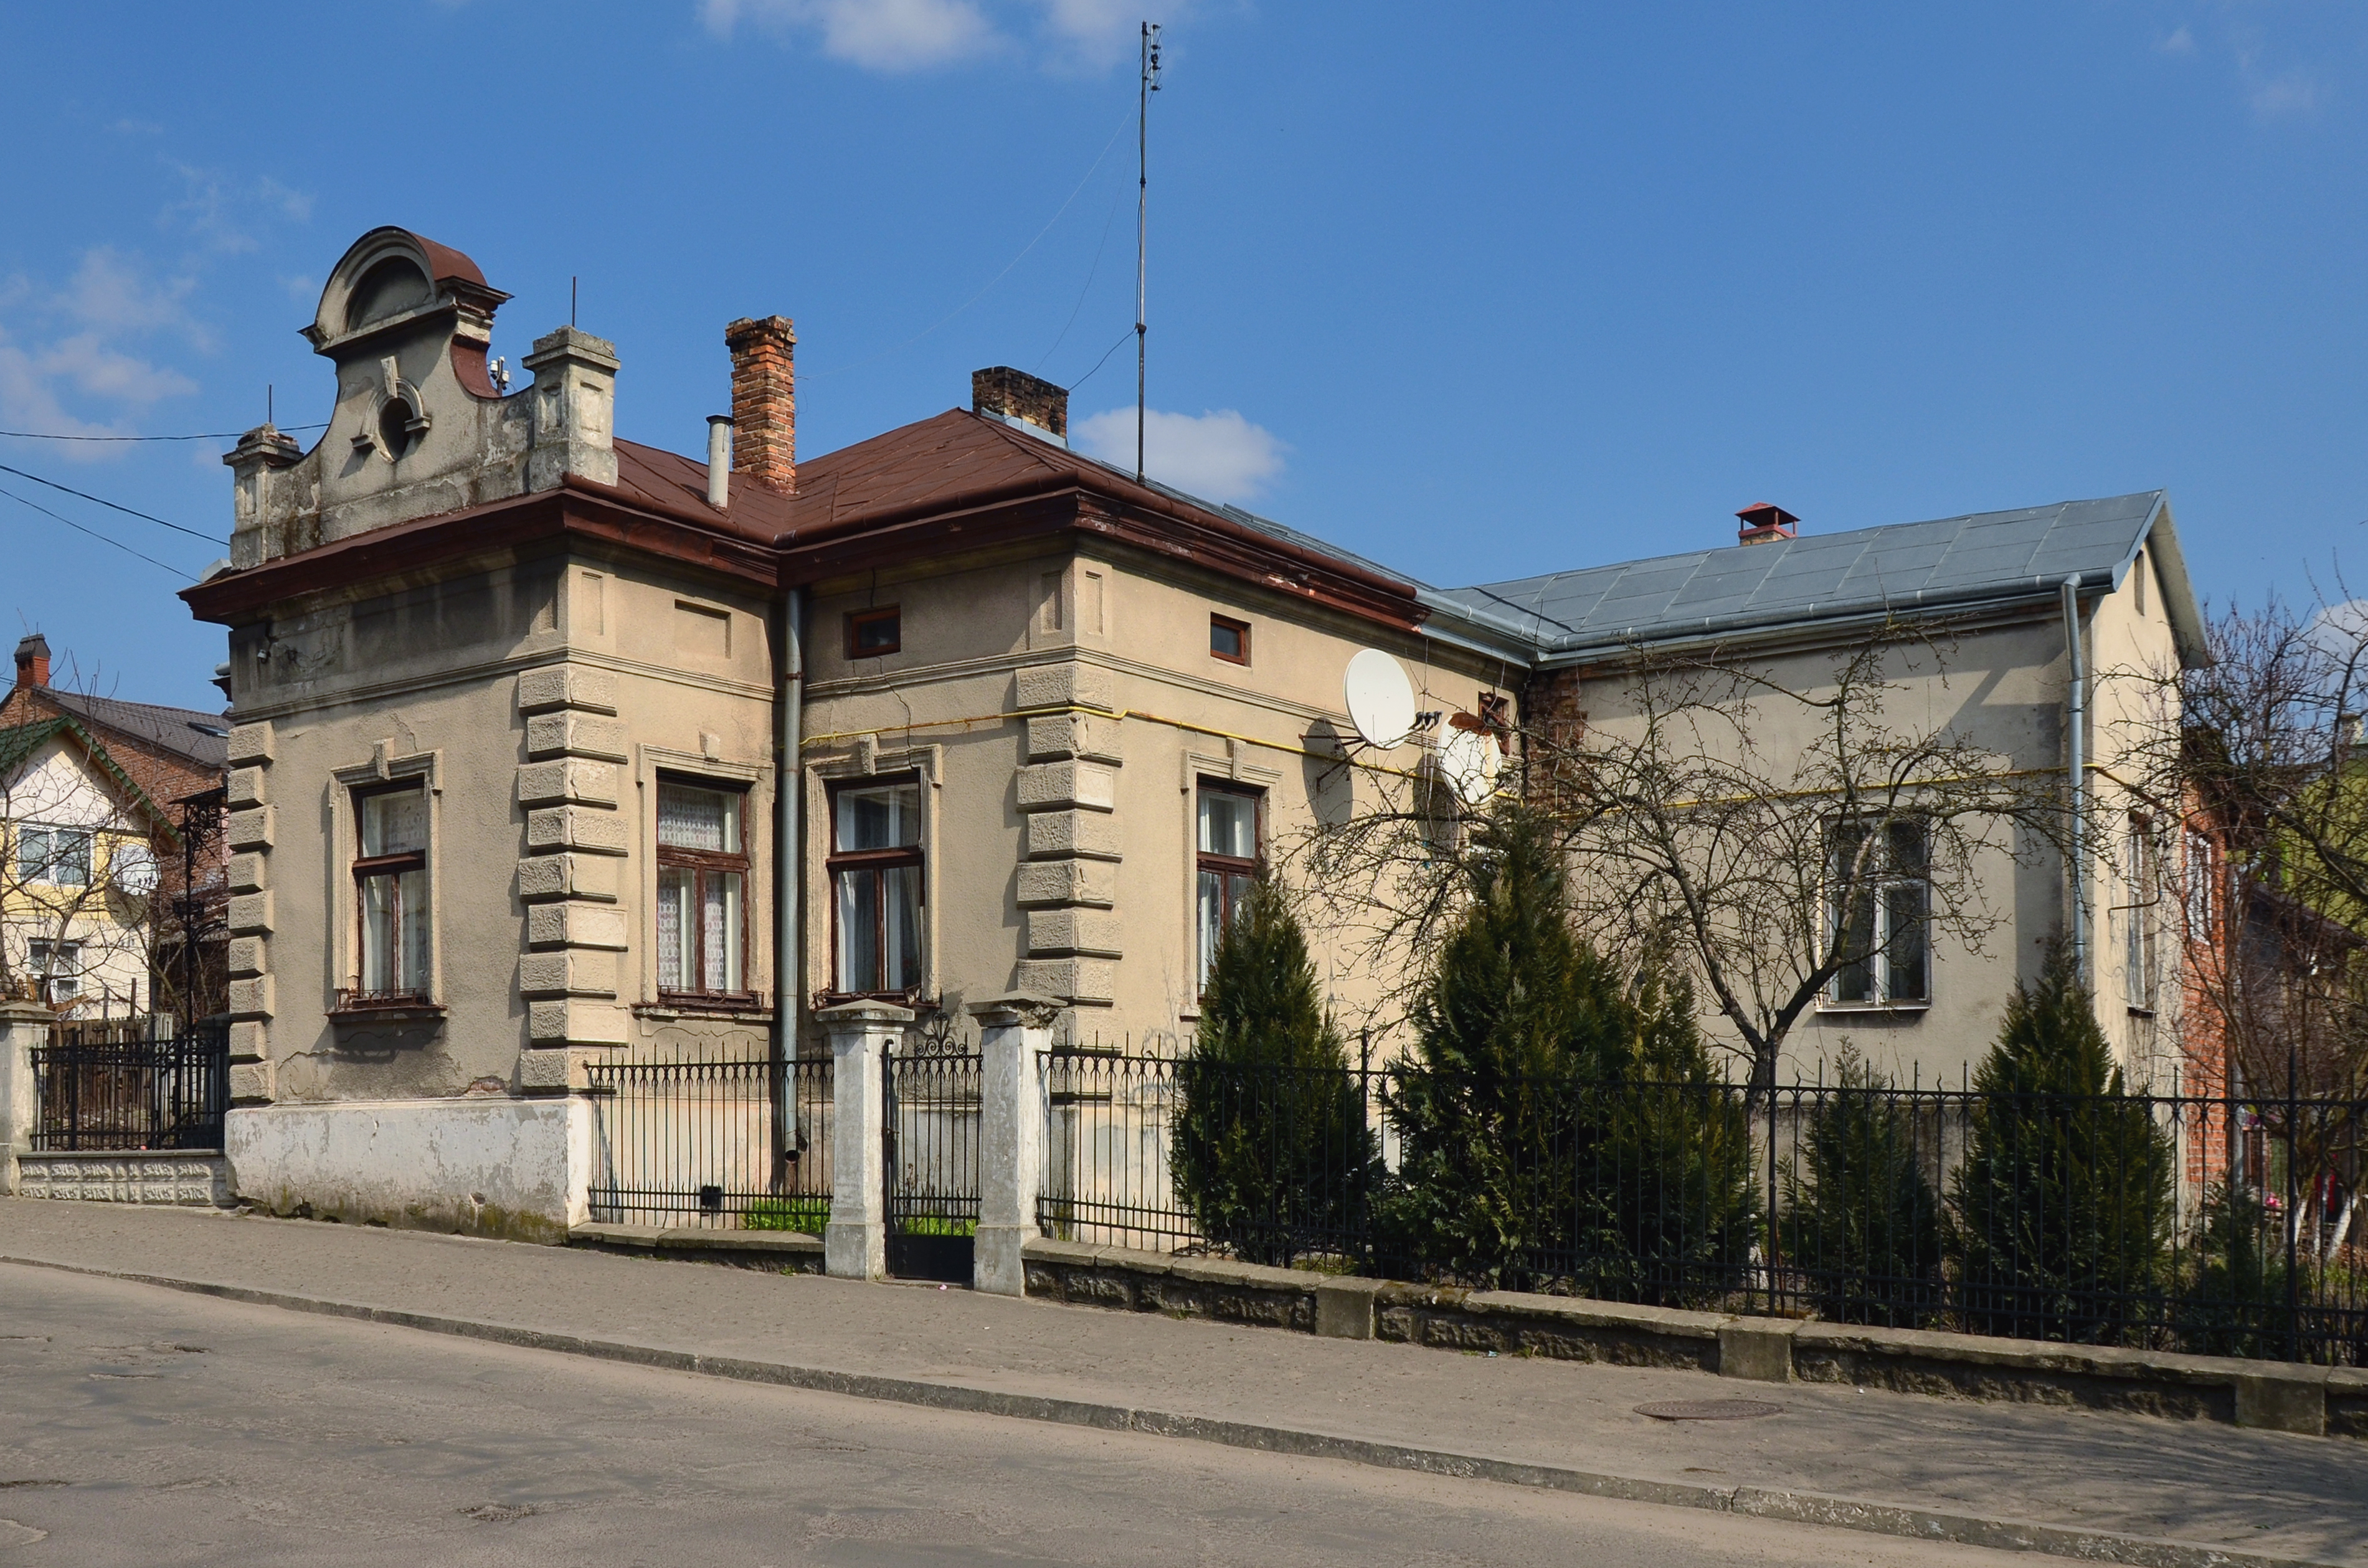 2 Shpytalna Street, Zhovkva (02)